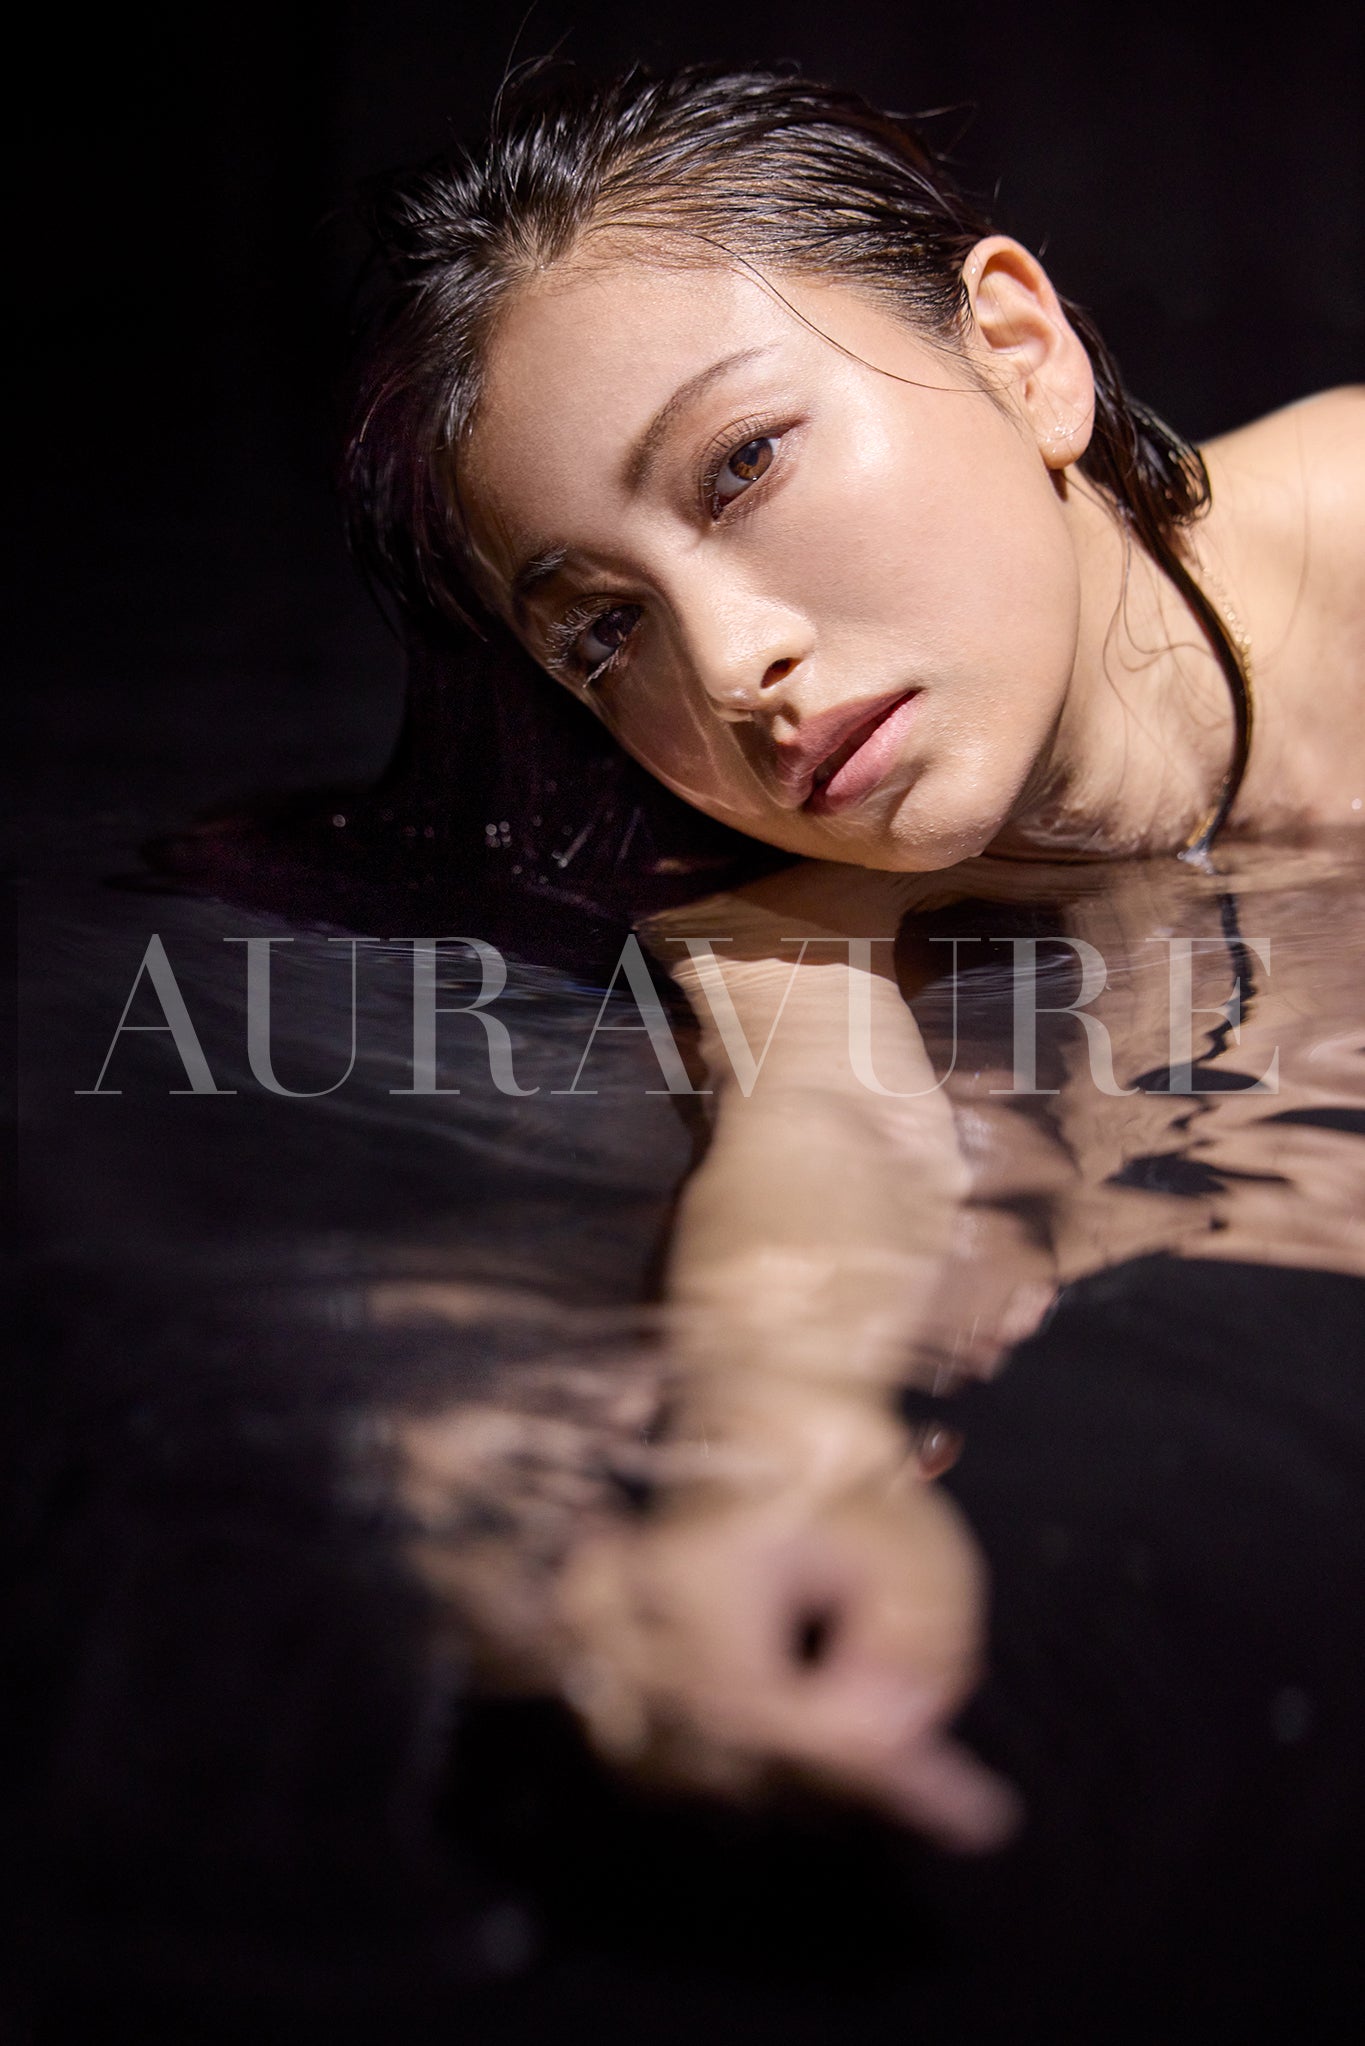 Auravure Magazine #2, Suzuki Sei, álbum de fotos digital más vídeo adicional, ¡Edición Completa!